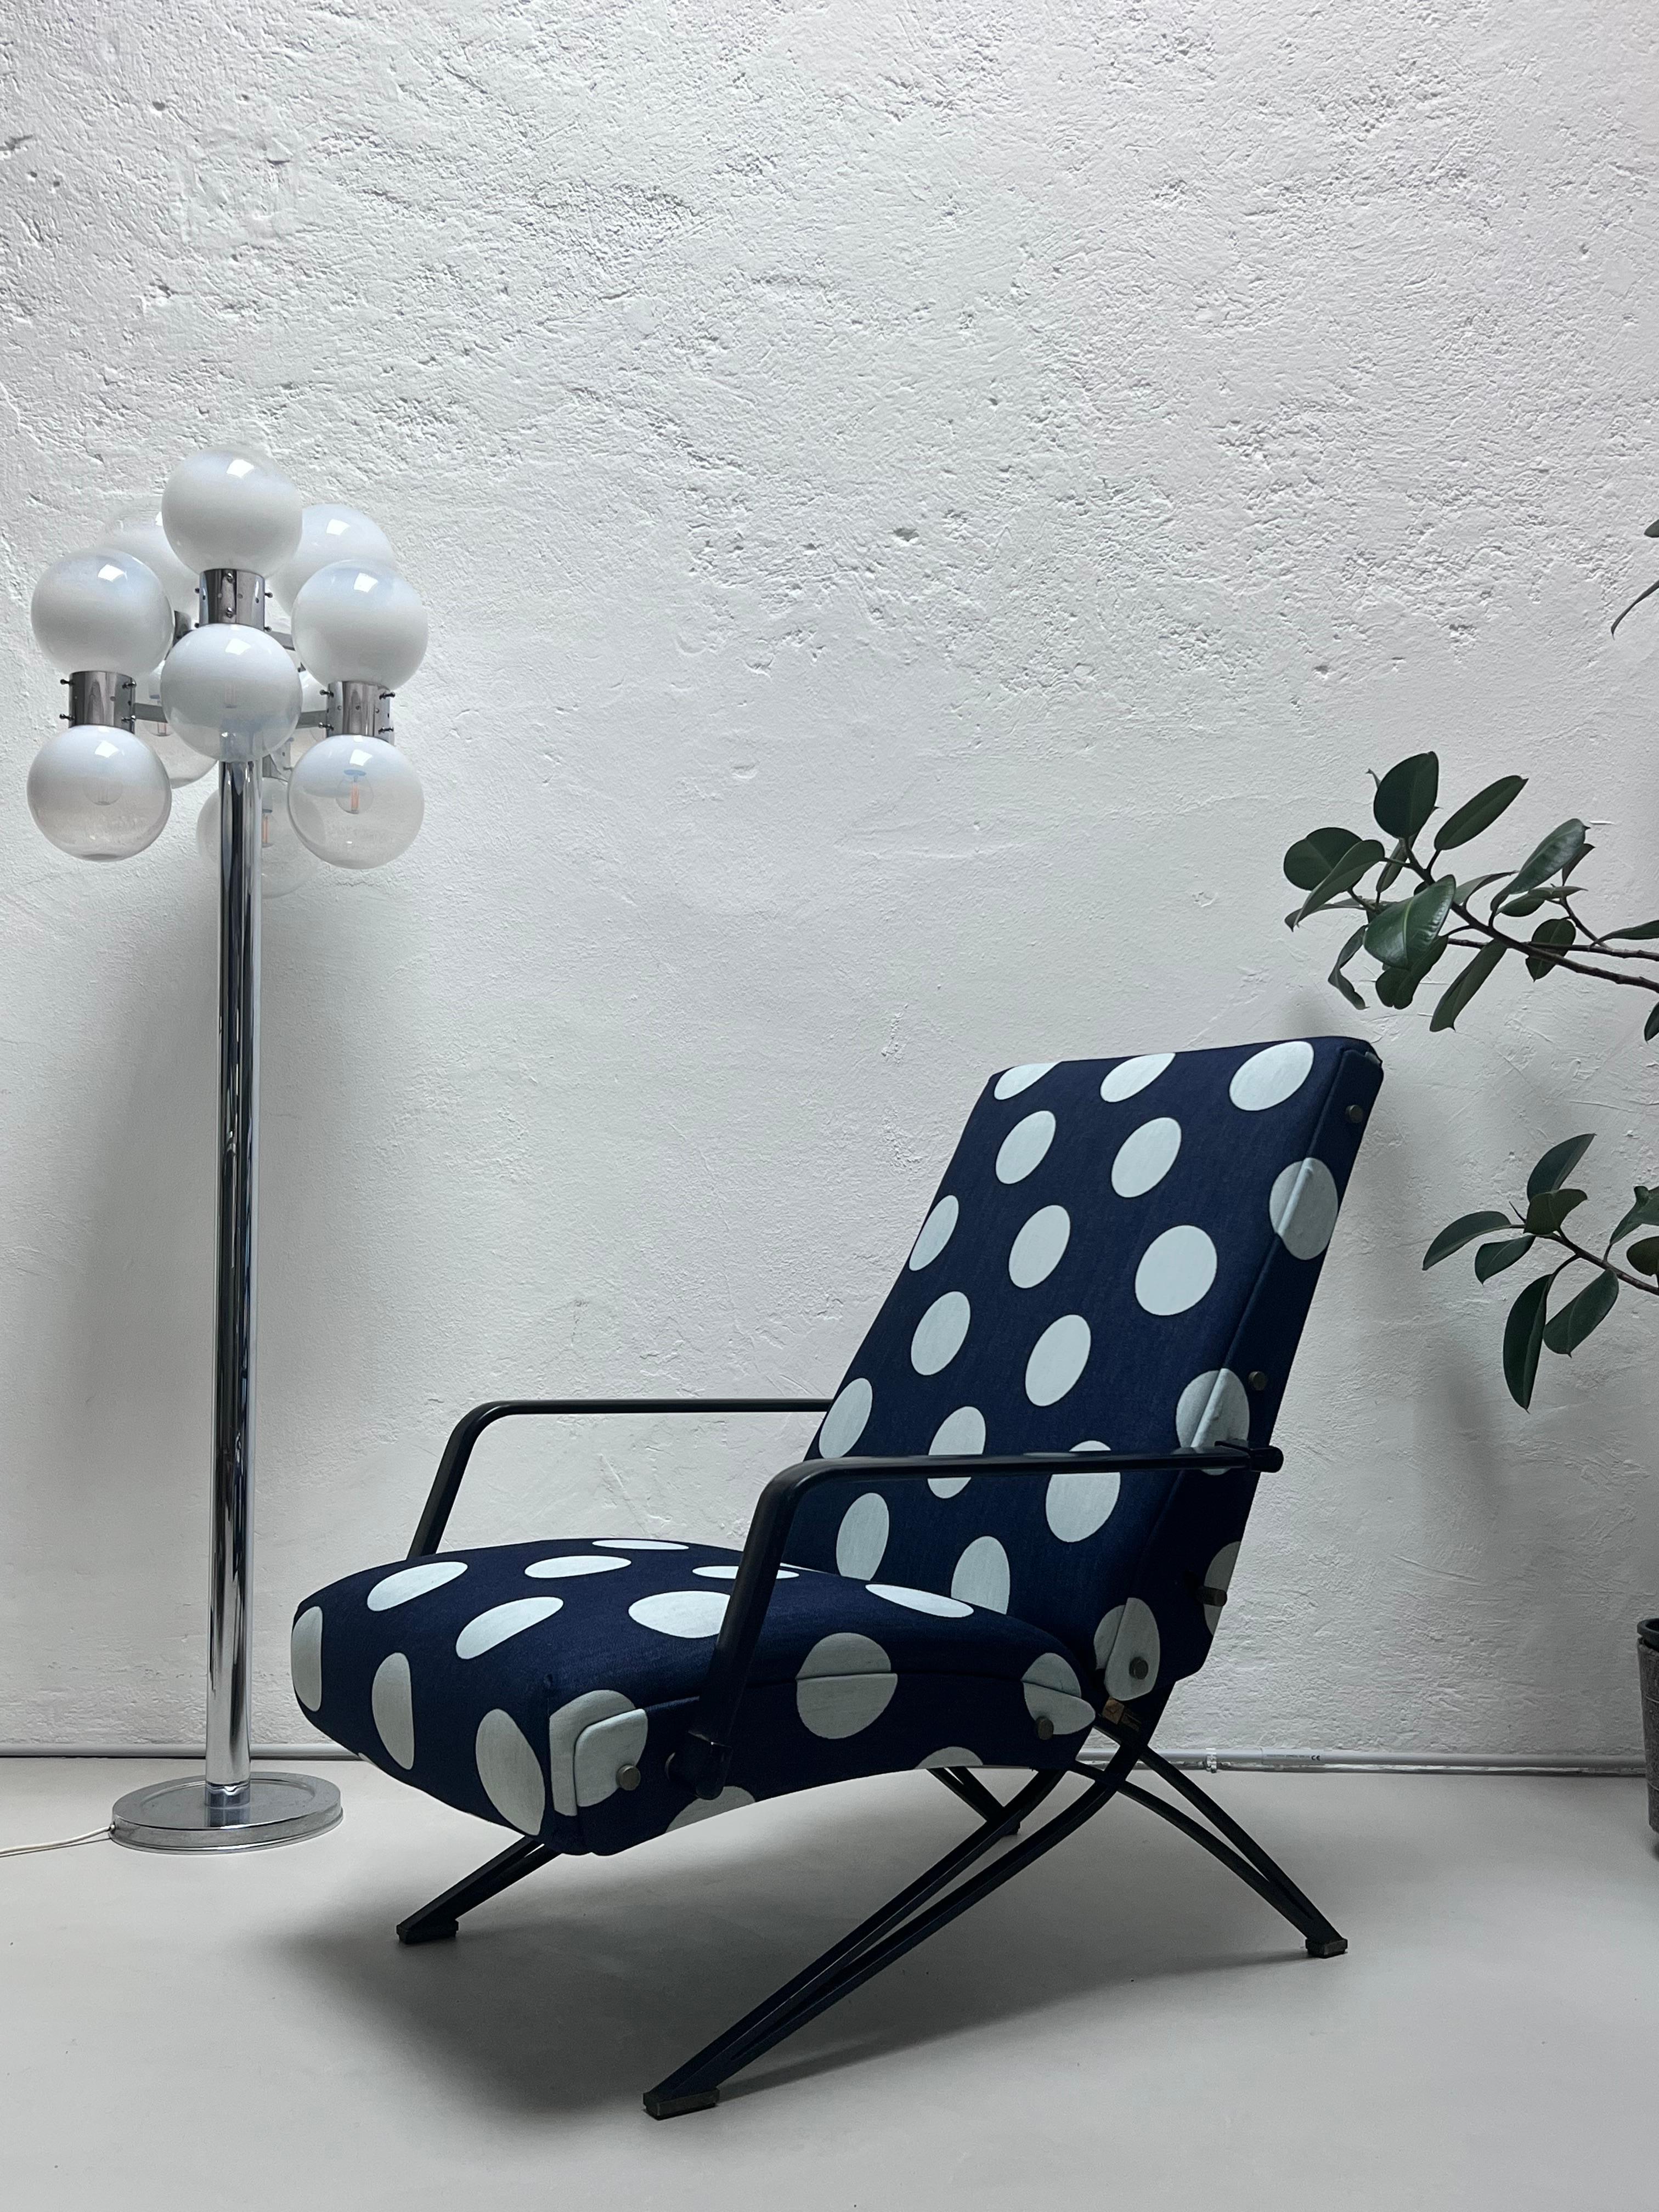 Chaise longue inclinable Formanova des années 1960, conçue par Giulio Moscatelli, récemment retapissée par un professionnel avec un tissu à pois de type denim. 

Possiblement inspiré de la chaise longue P40 d'Osvaldo Borsani, conçue pour Tecno une